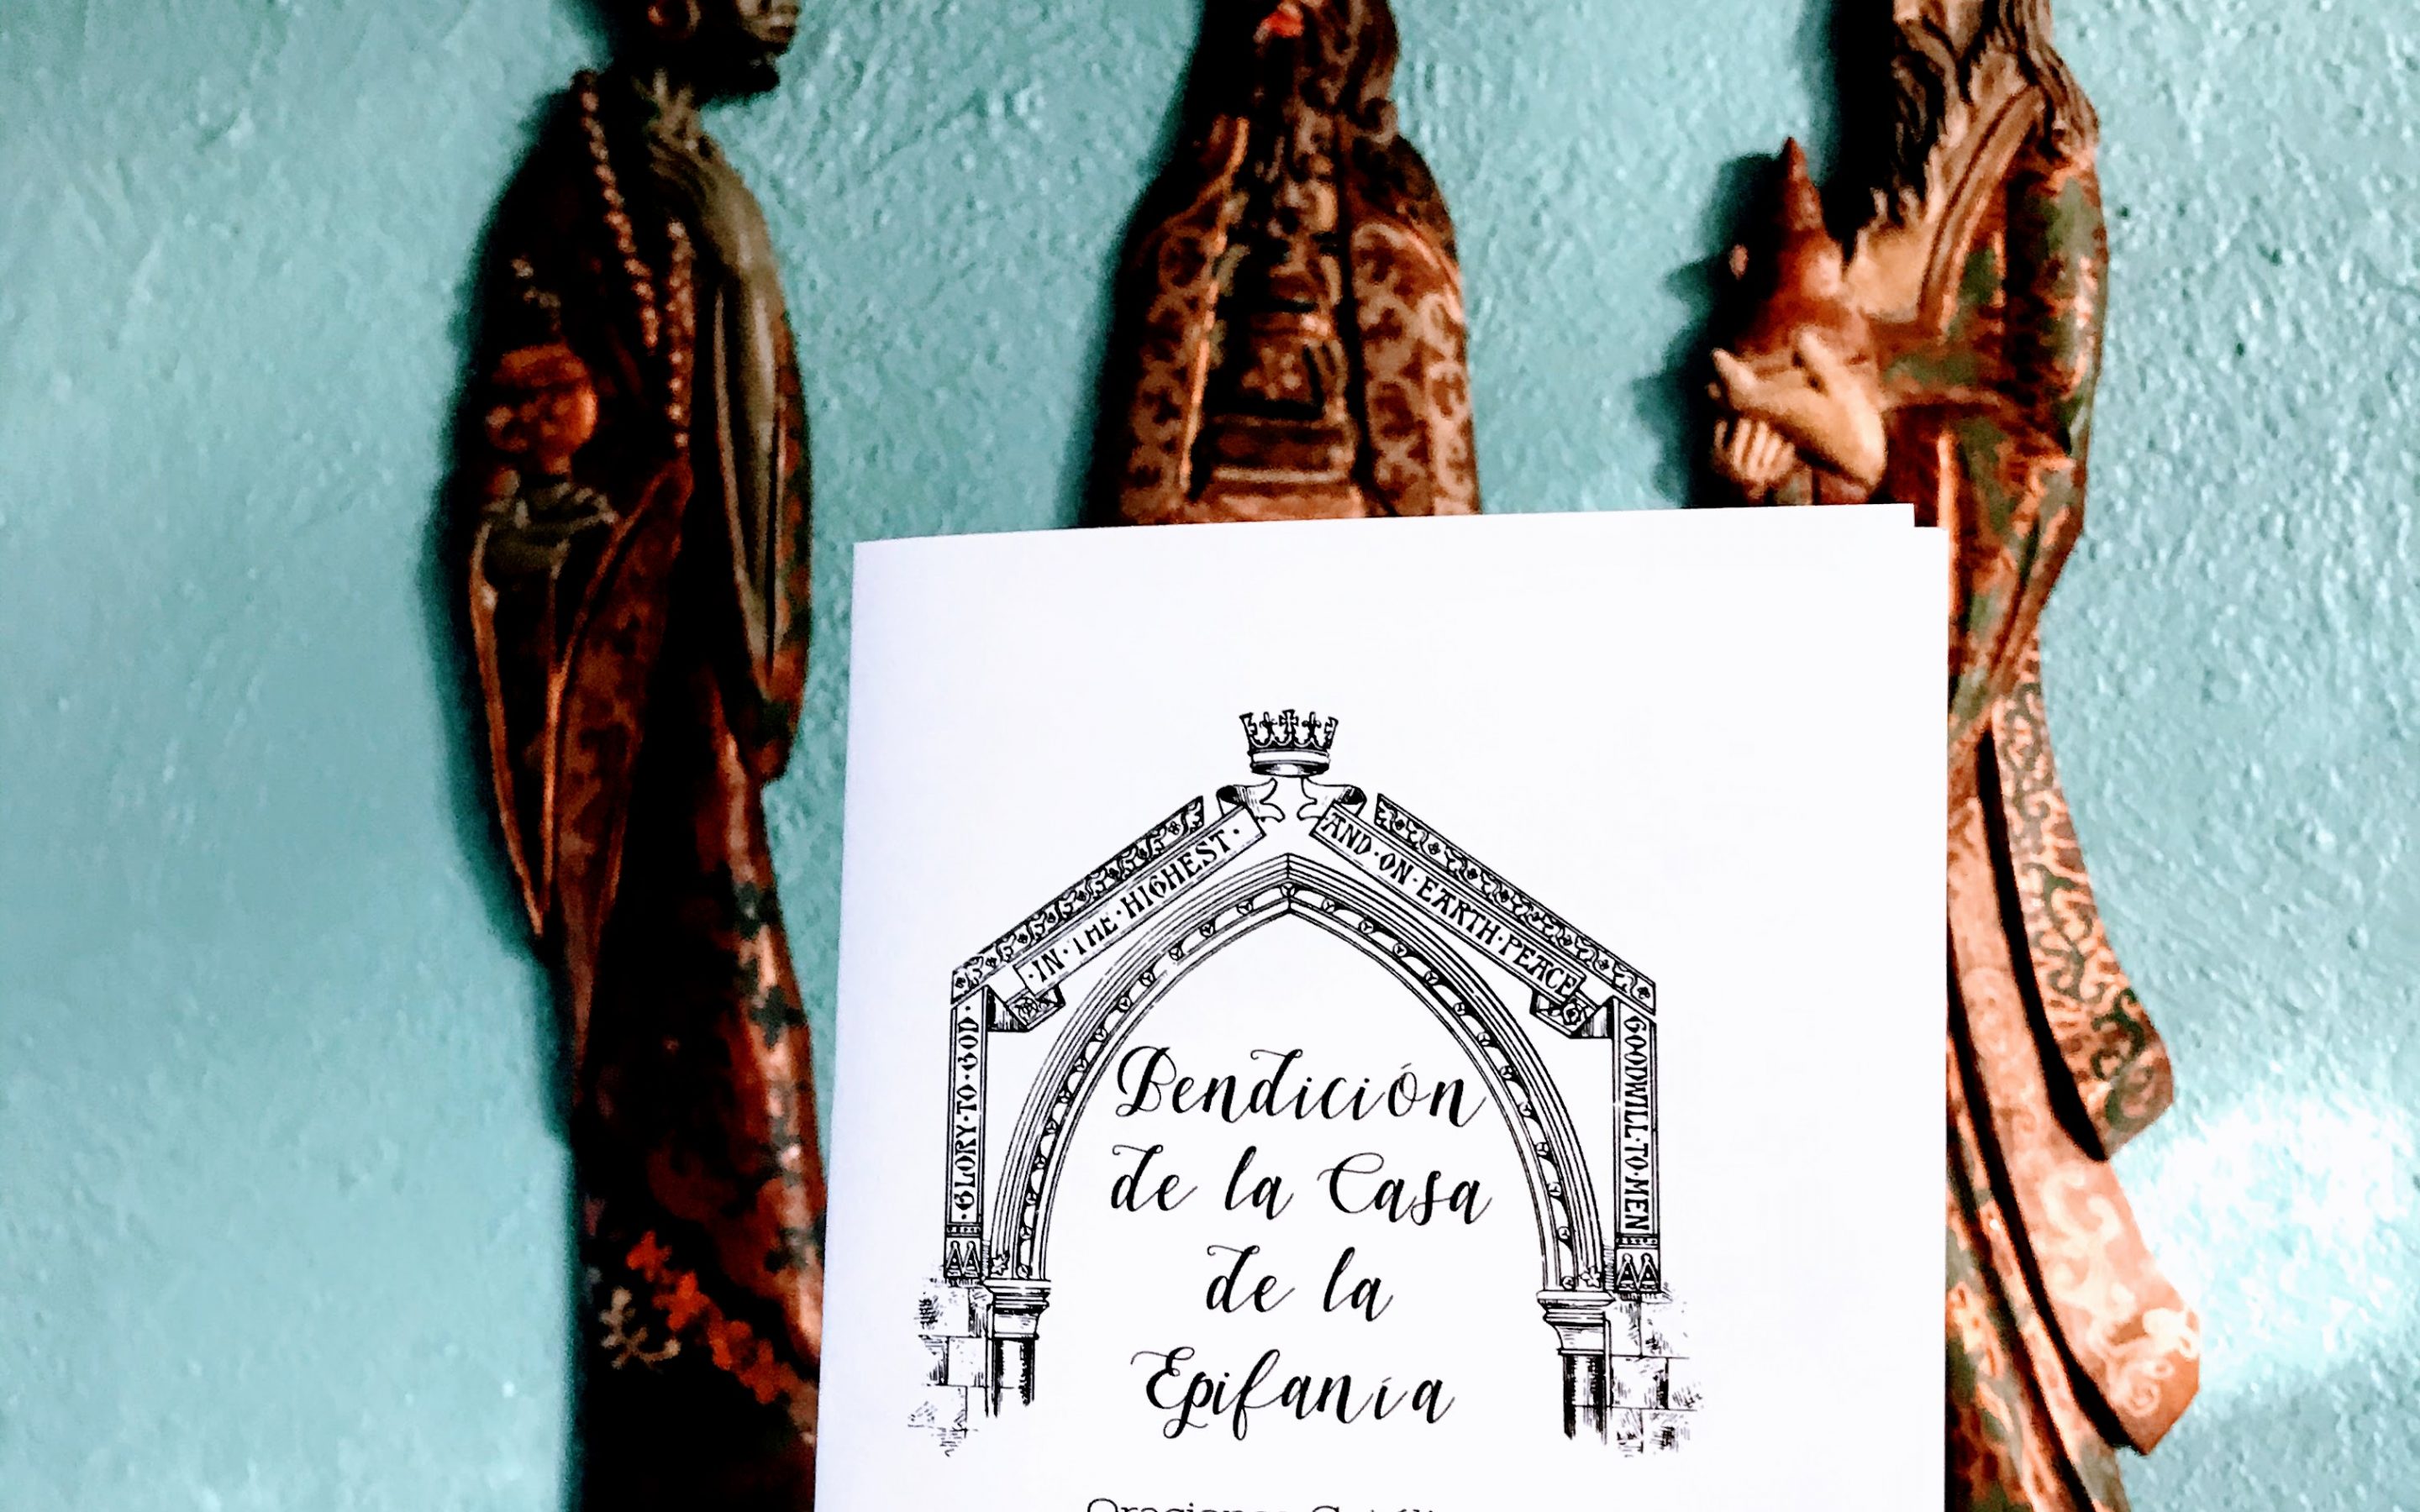 Bendición de la Casa de la Epifanía Folleto Imprimible * Descarga Digital * Epiphany House Blessing Printable Booklet in Spanish